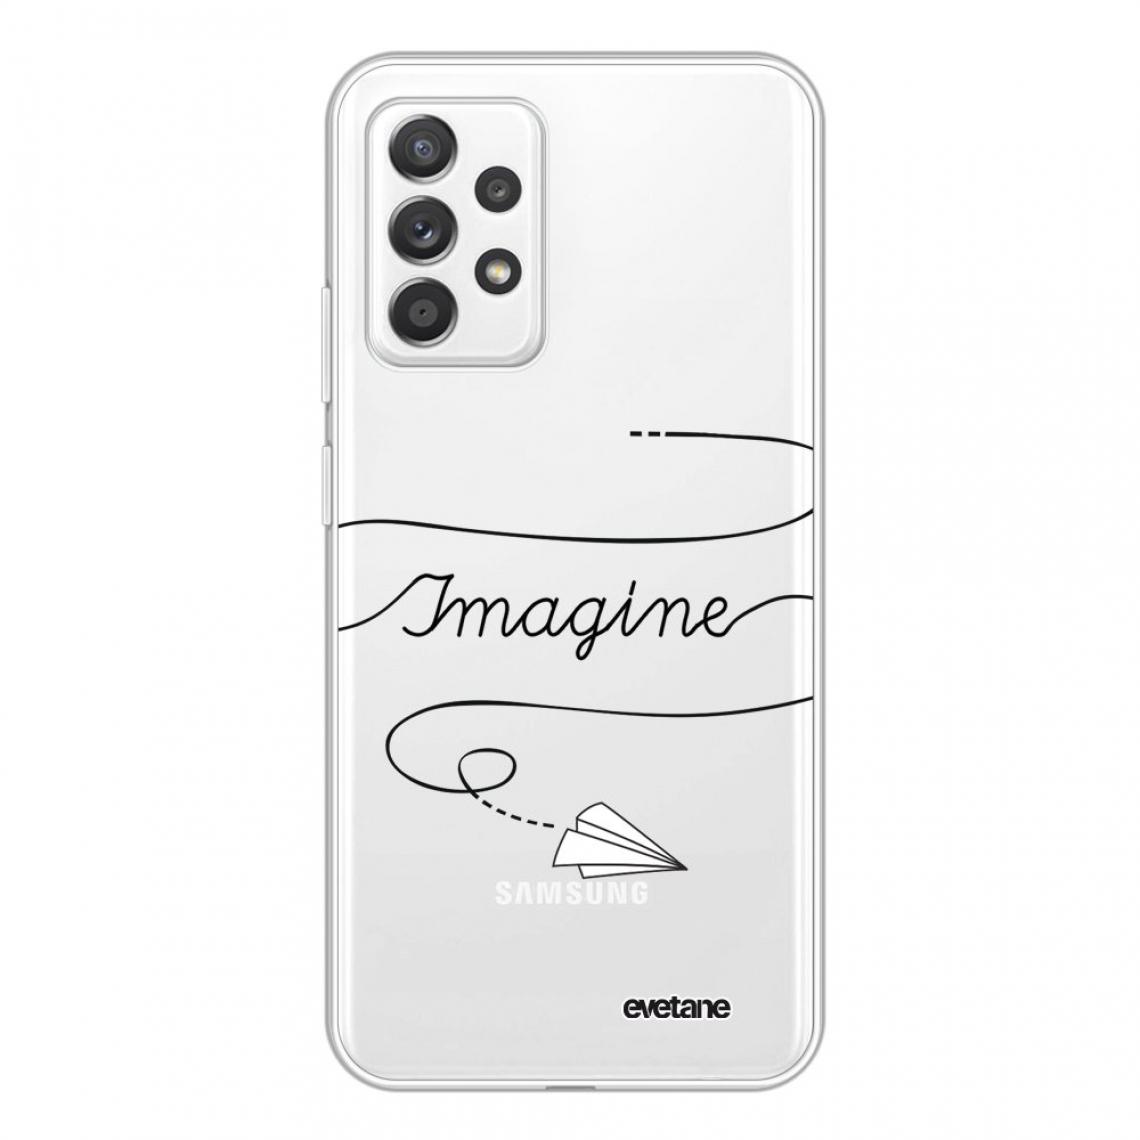 Evetane - Coque Samsung Galaxy A72 souple silicone transparente - Coque, étui smartphone